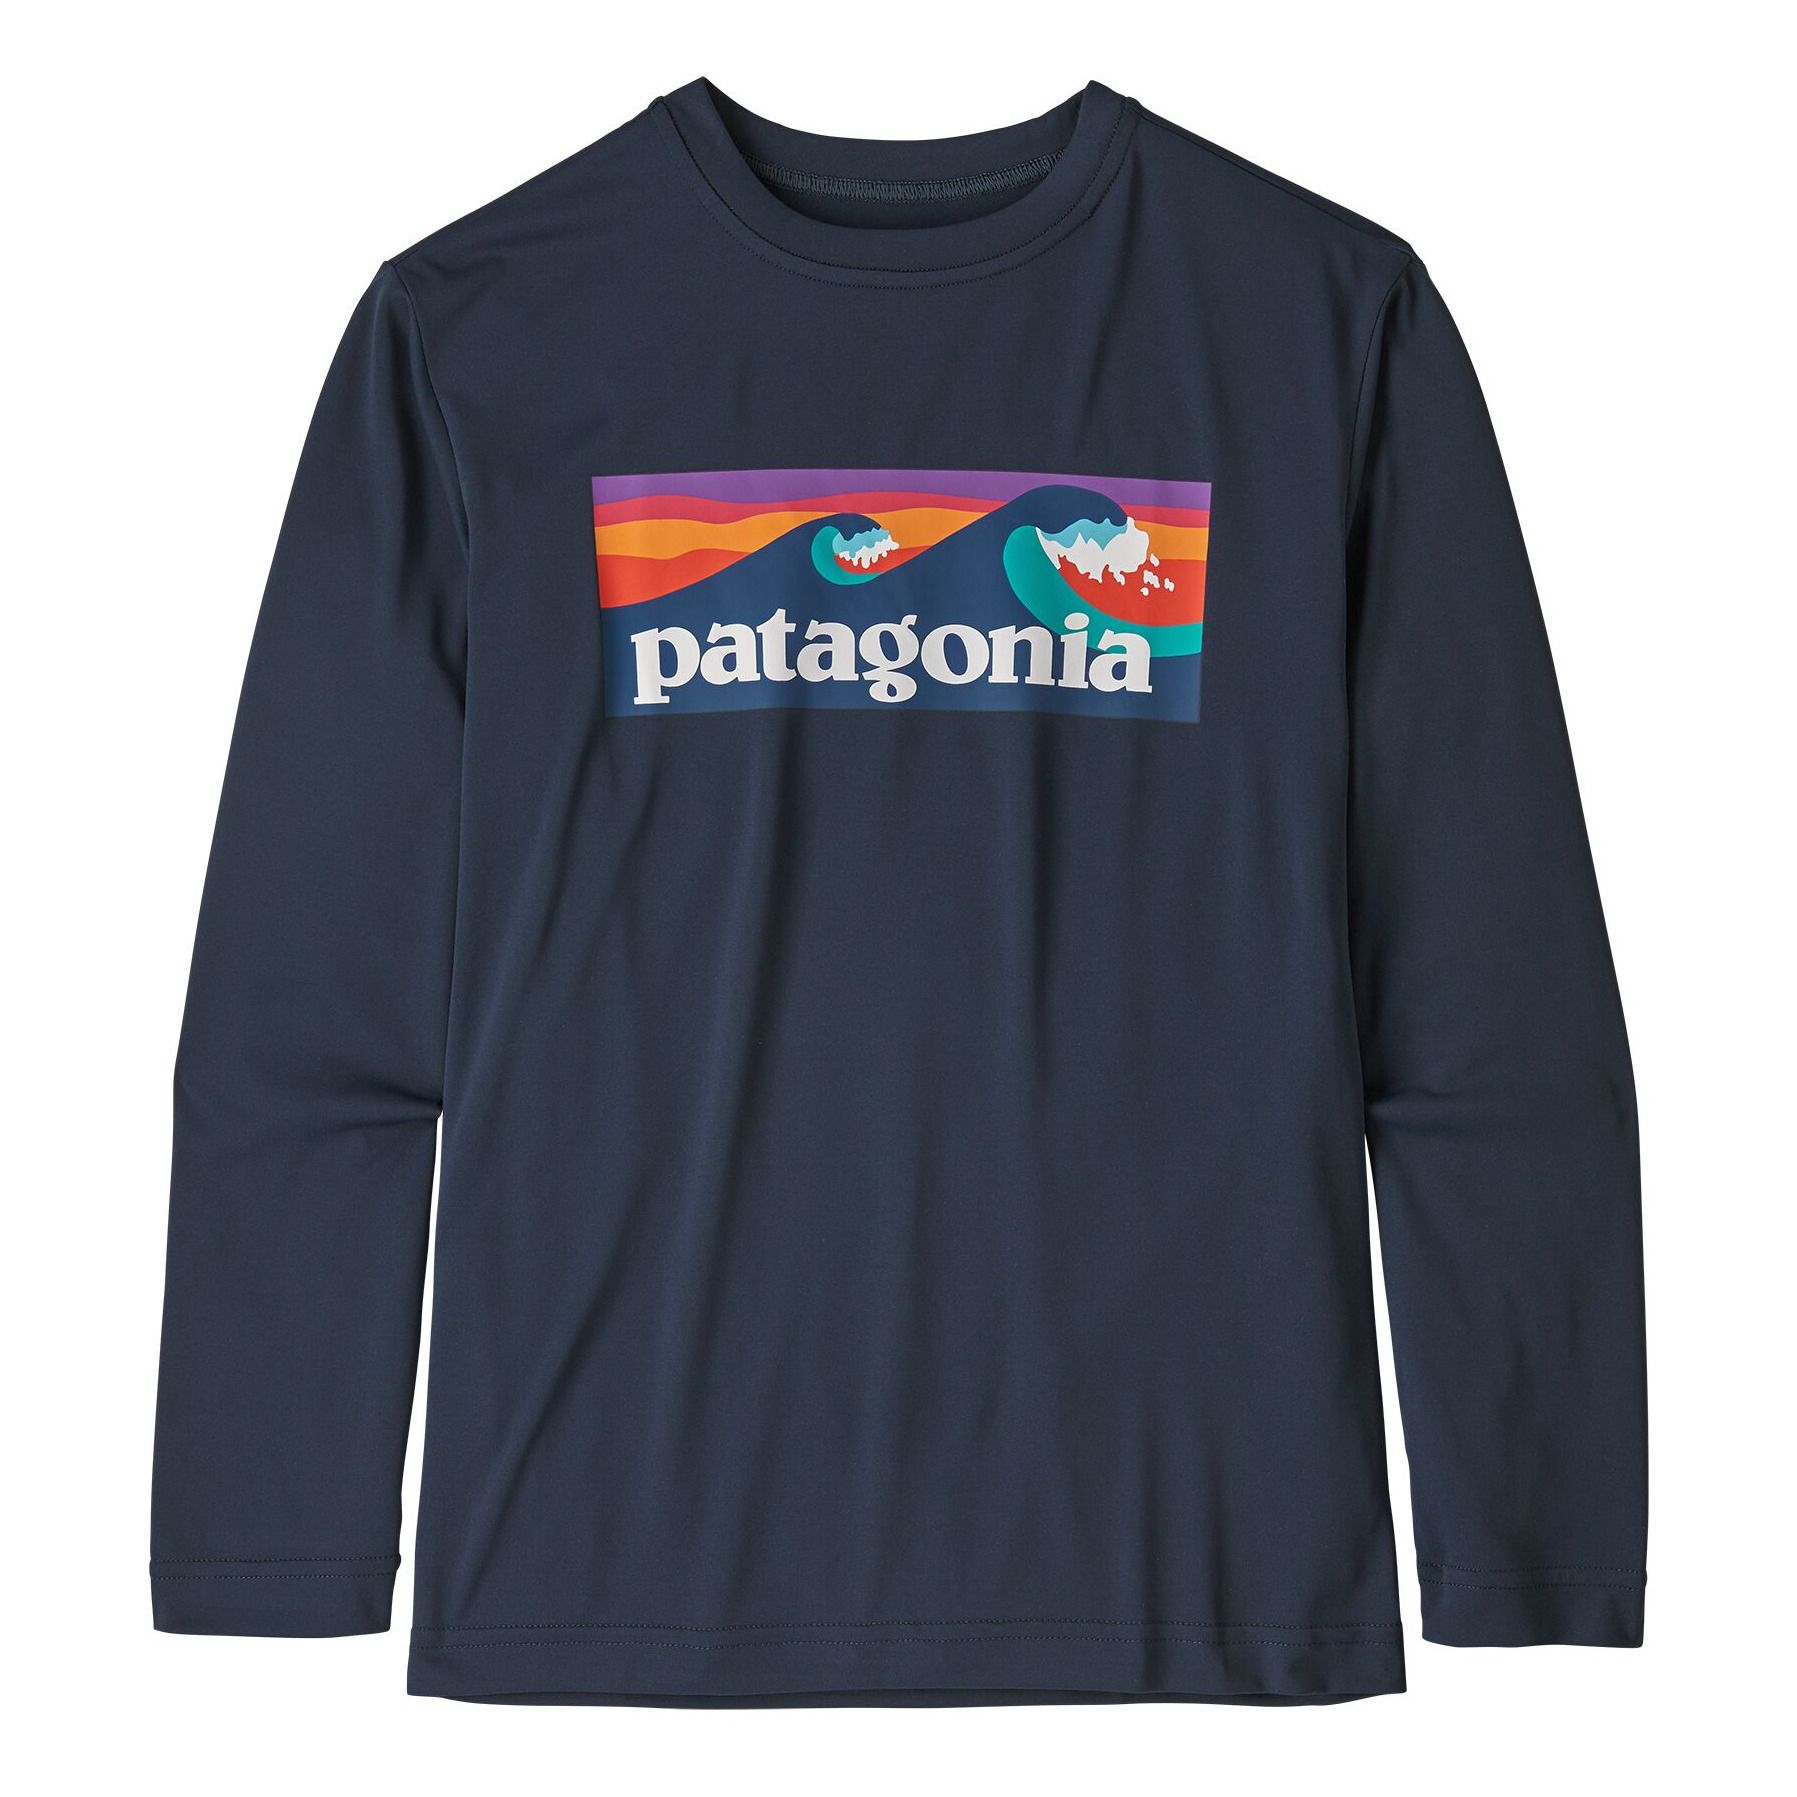 Patagonia - T-shirt Anti-UV - Fille - Bleu marine